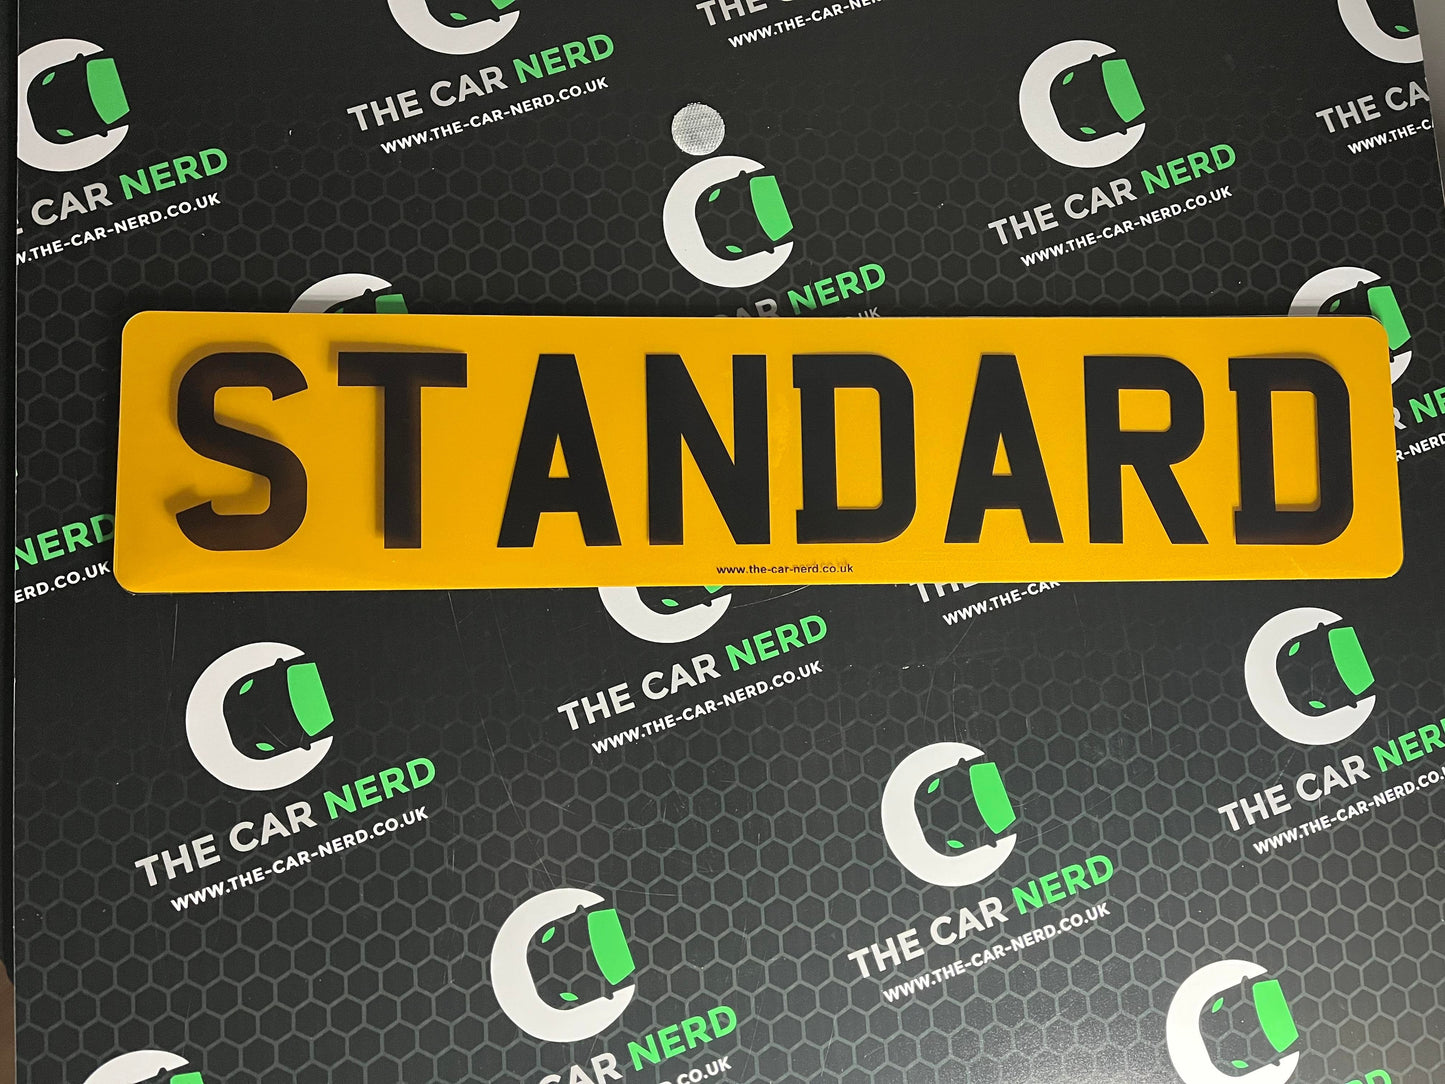 Standard UK Road Legal number plates